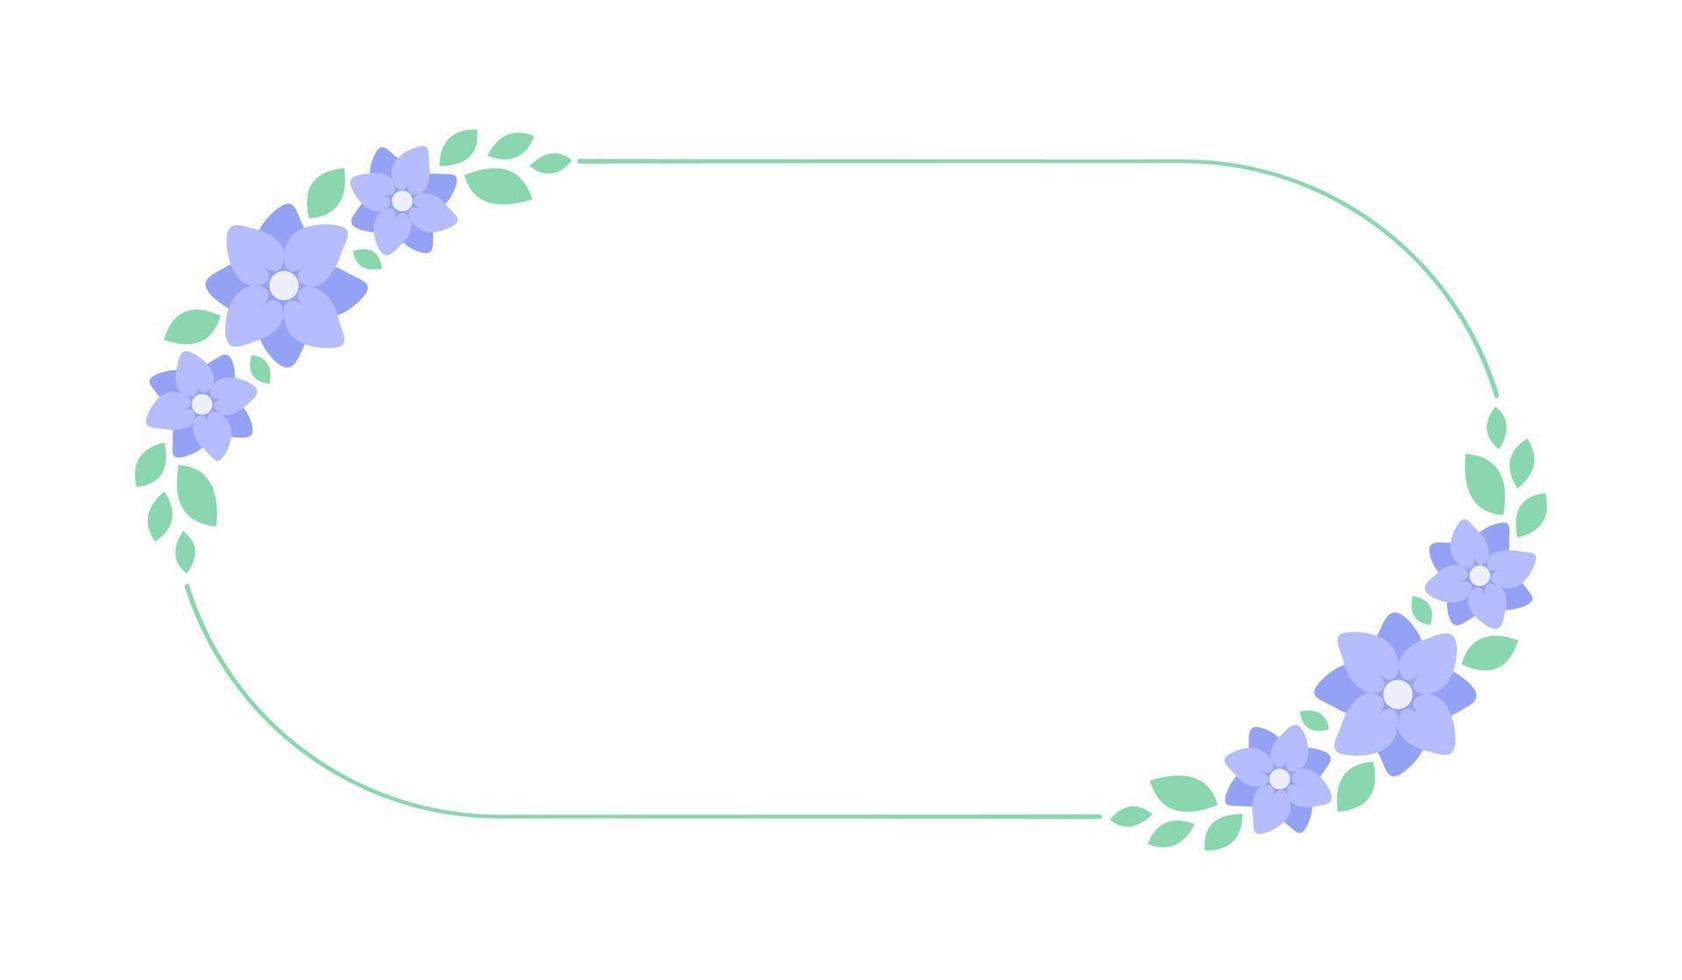 Oval lavender floral frame. Botanical flower border vector illustration. Simple elegant romantic style for wedding events, signs, logo, labels, social media posts, etc.